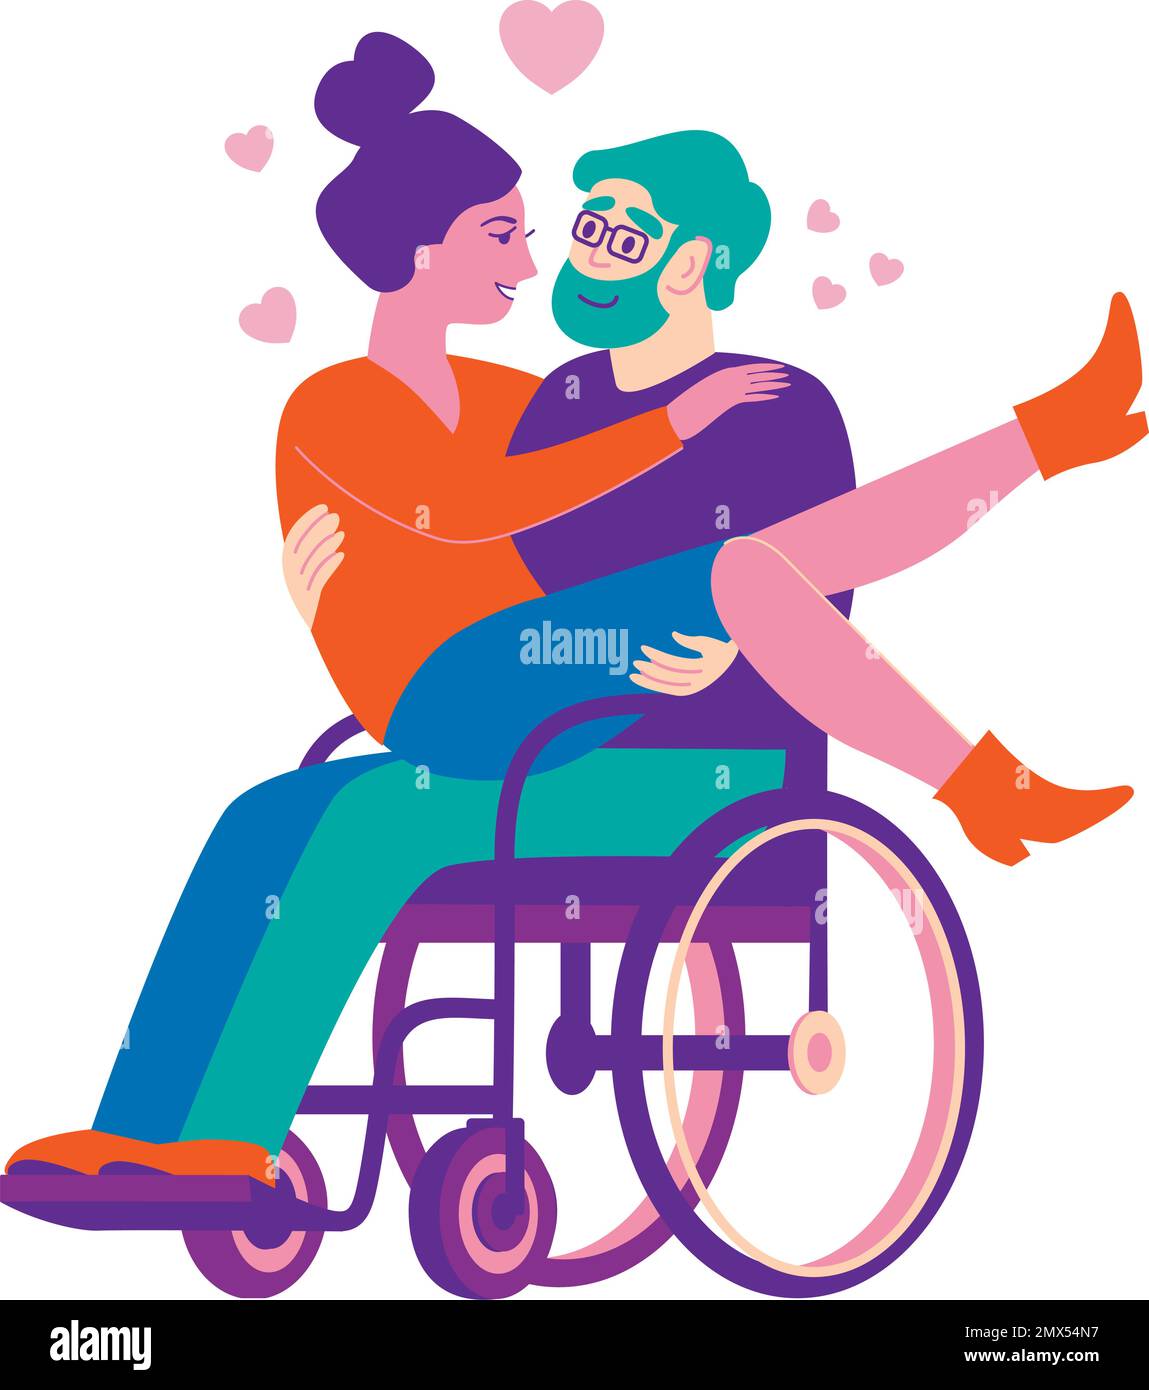 Junge, glückliche, heterosexuelle Paare, die sich lieben. Ein behinderter Mann im Rollstuhl hält die Freundin auf den Armen. Abbildung eines flachen Vektors. Stock Vektor